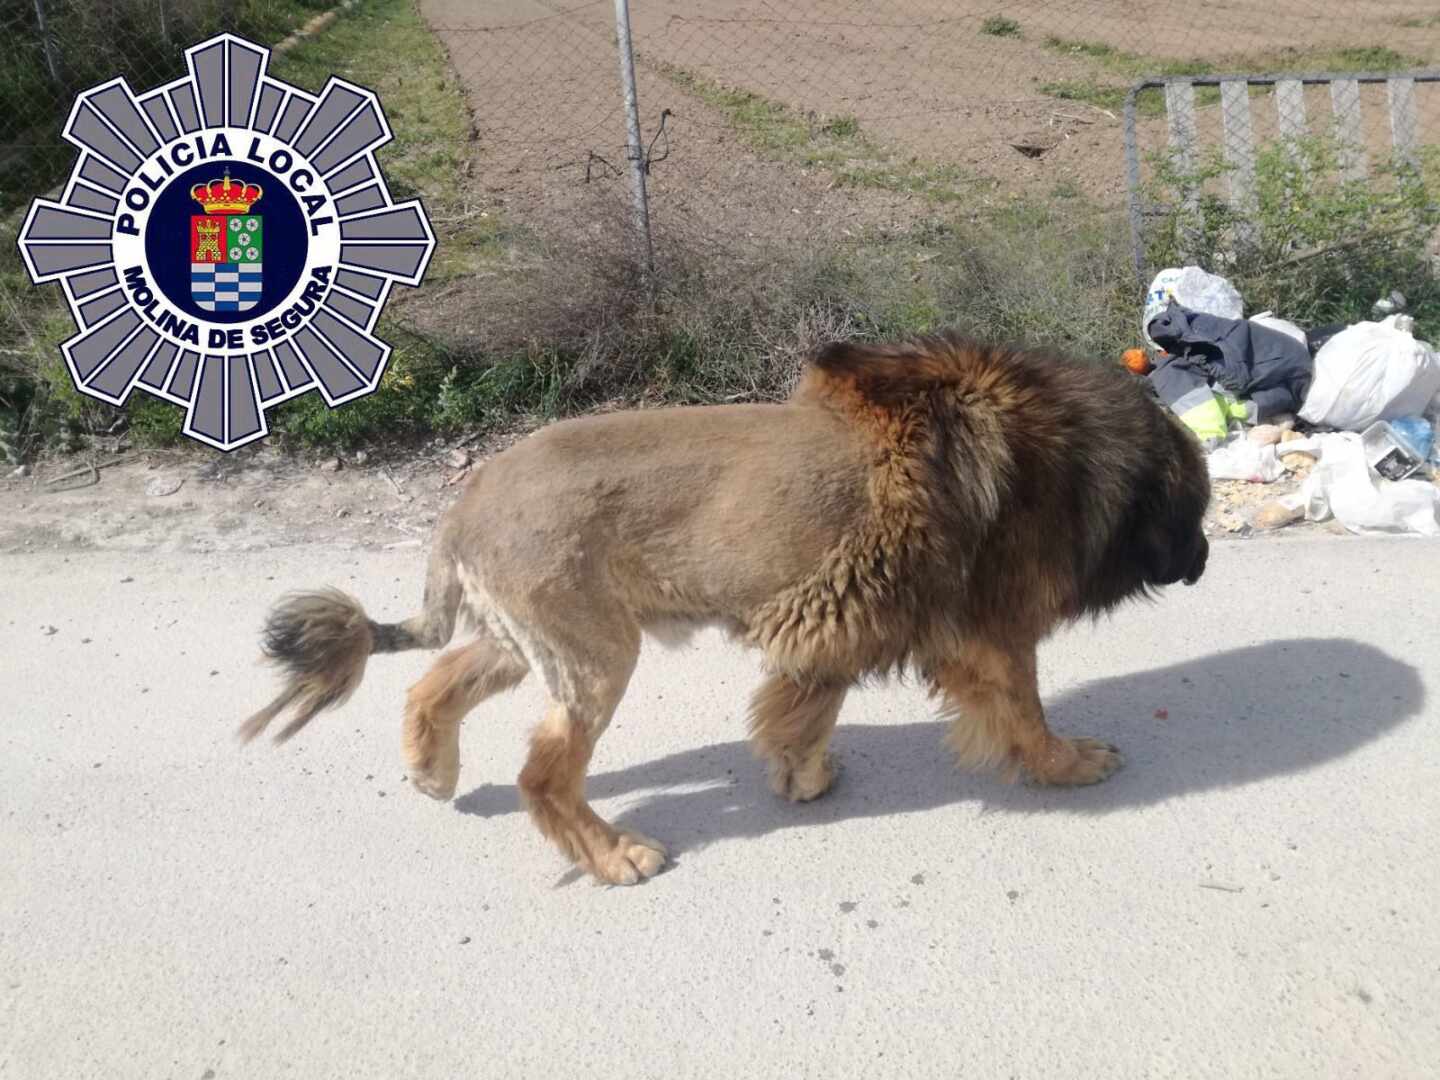 Vecinos alertan de ver un león suelto y la policía confirma que es un perro